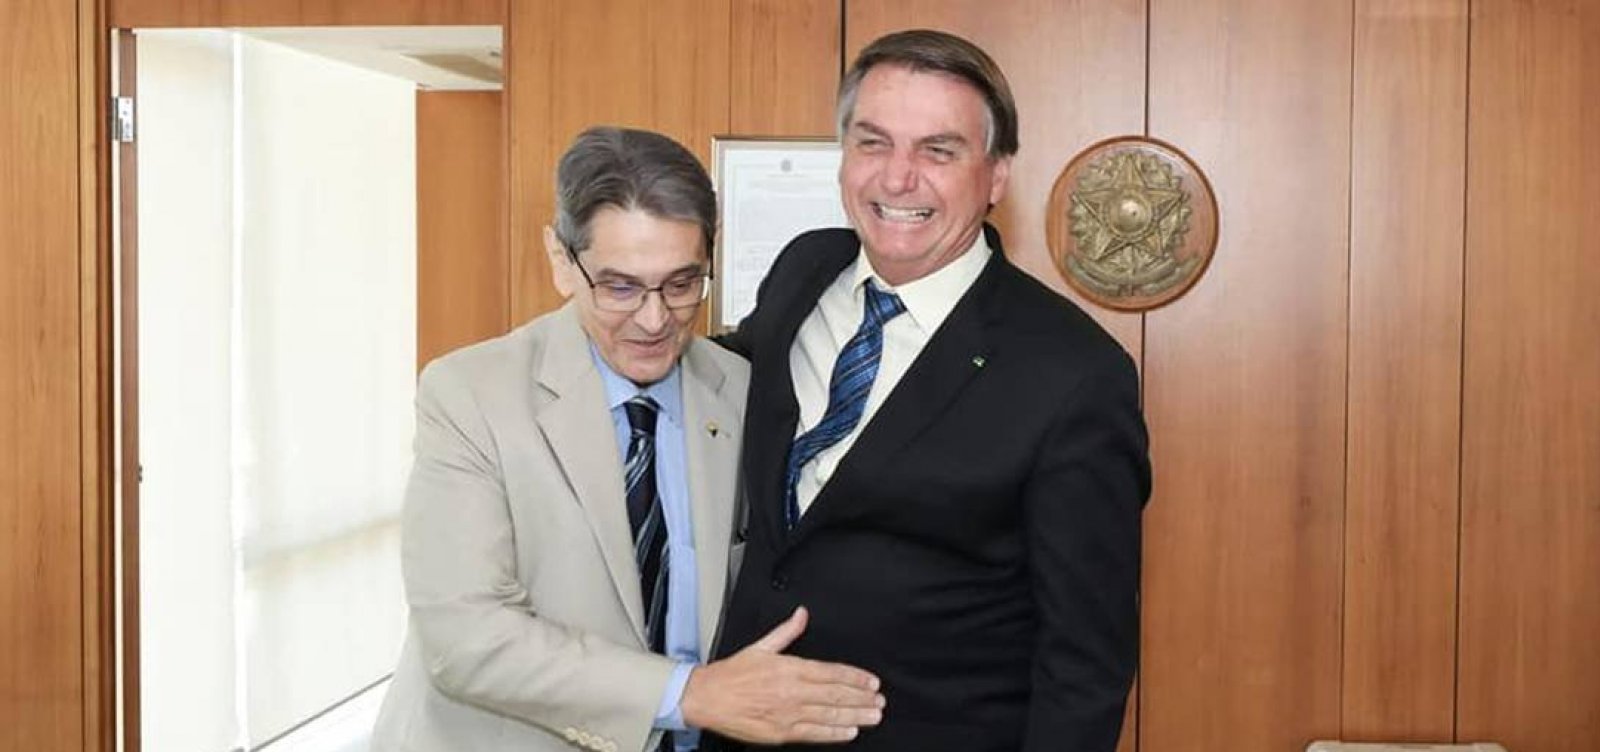 Roberto Jefferson manda recado para Bolsonaro: "Não aceitarei ser abandonado"